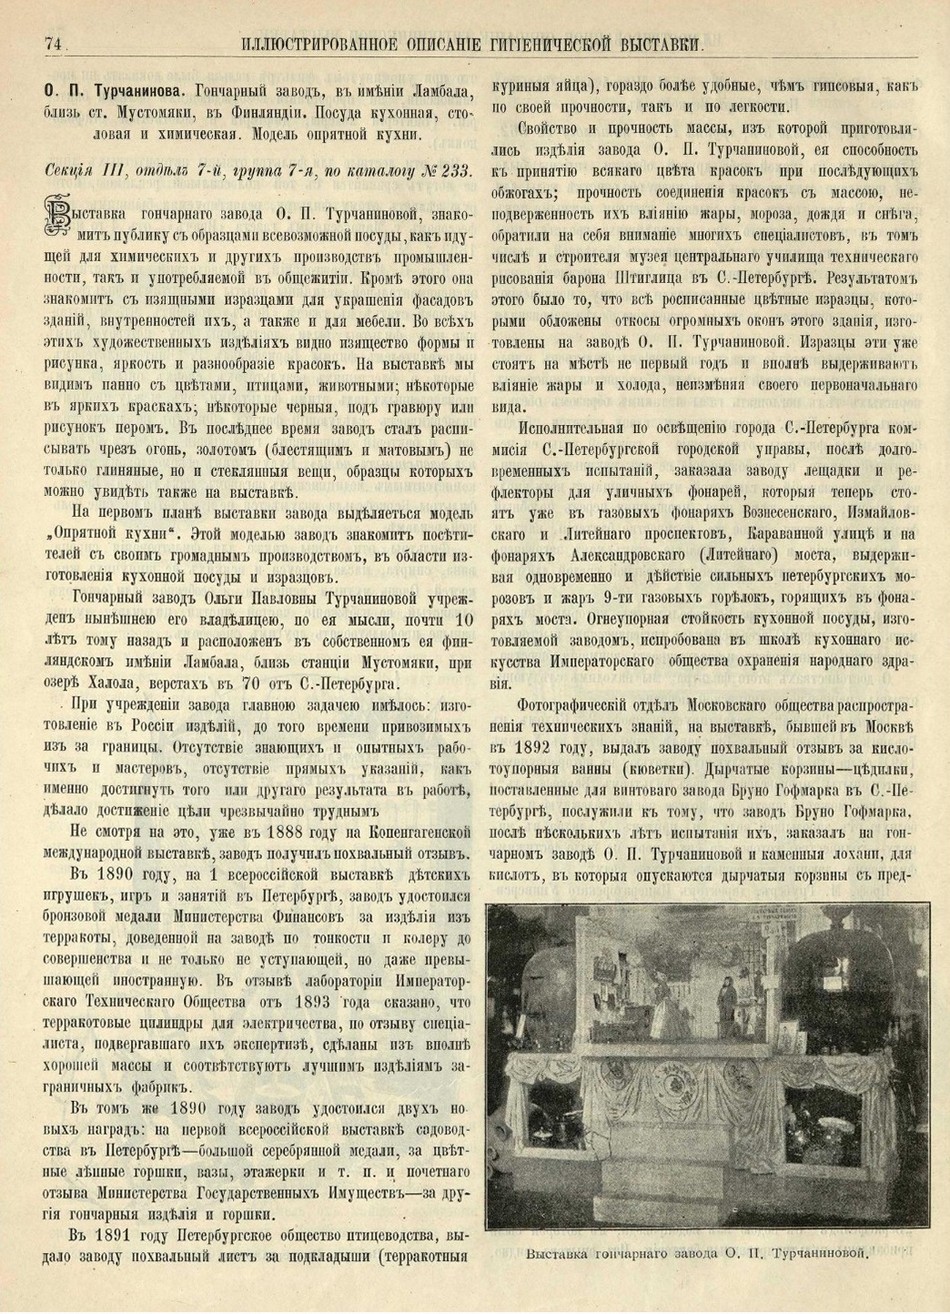 Турчанинова_Описание гигиенической выставки_1893.jpg